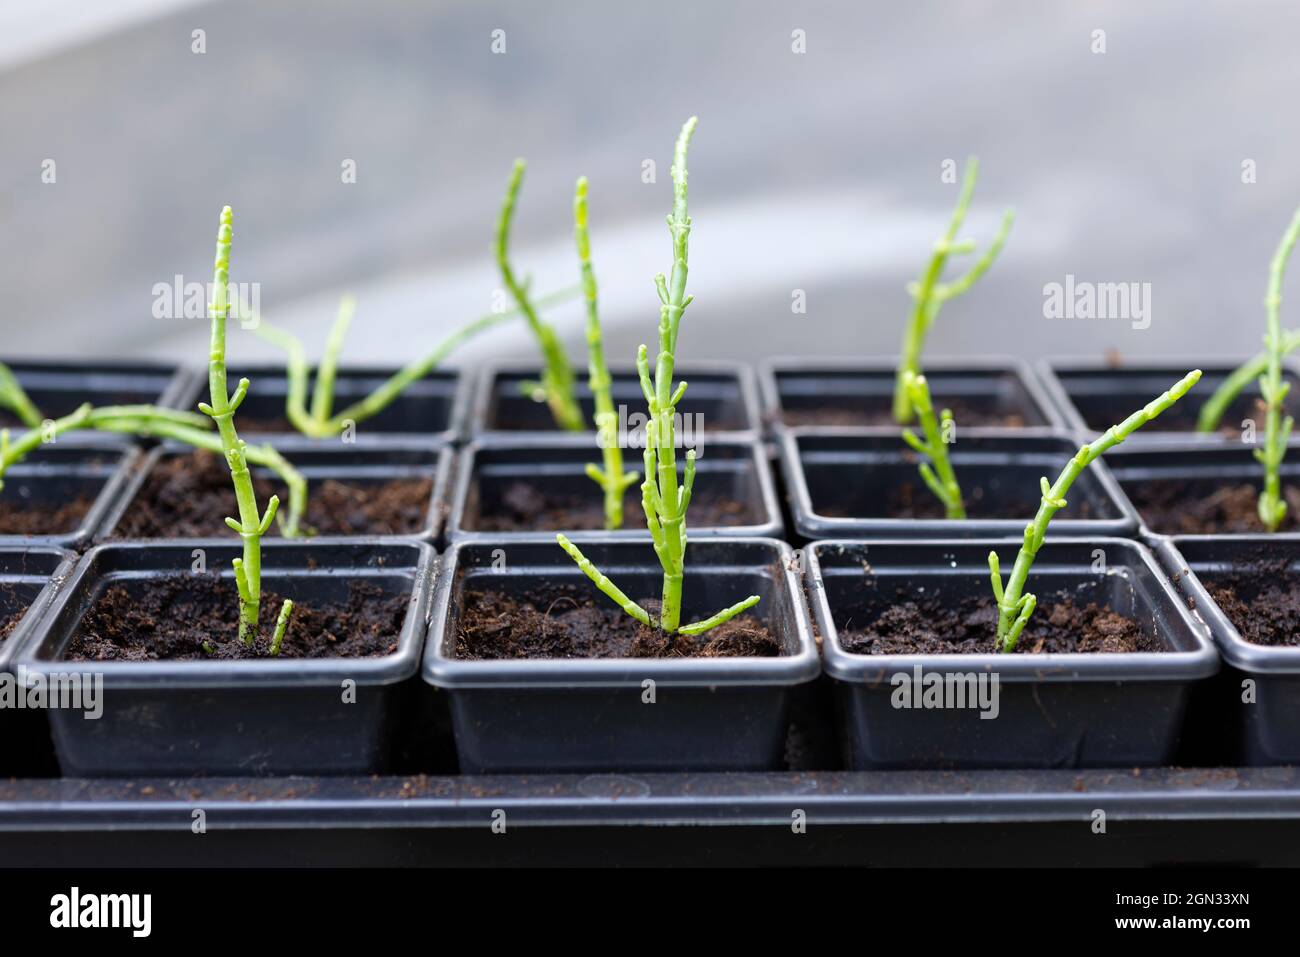 Coltivare il Samphire (Salicornia Europaea) - piantine in vasi individuali in un tunnel di polietilene. Inghilterra, Regno Unito. Foto Stock